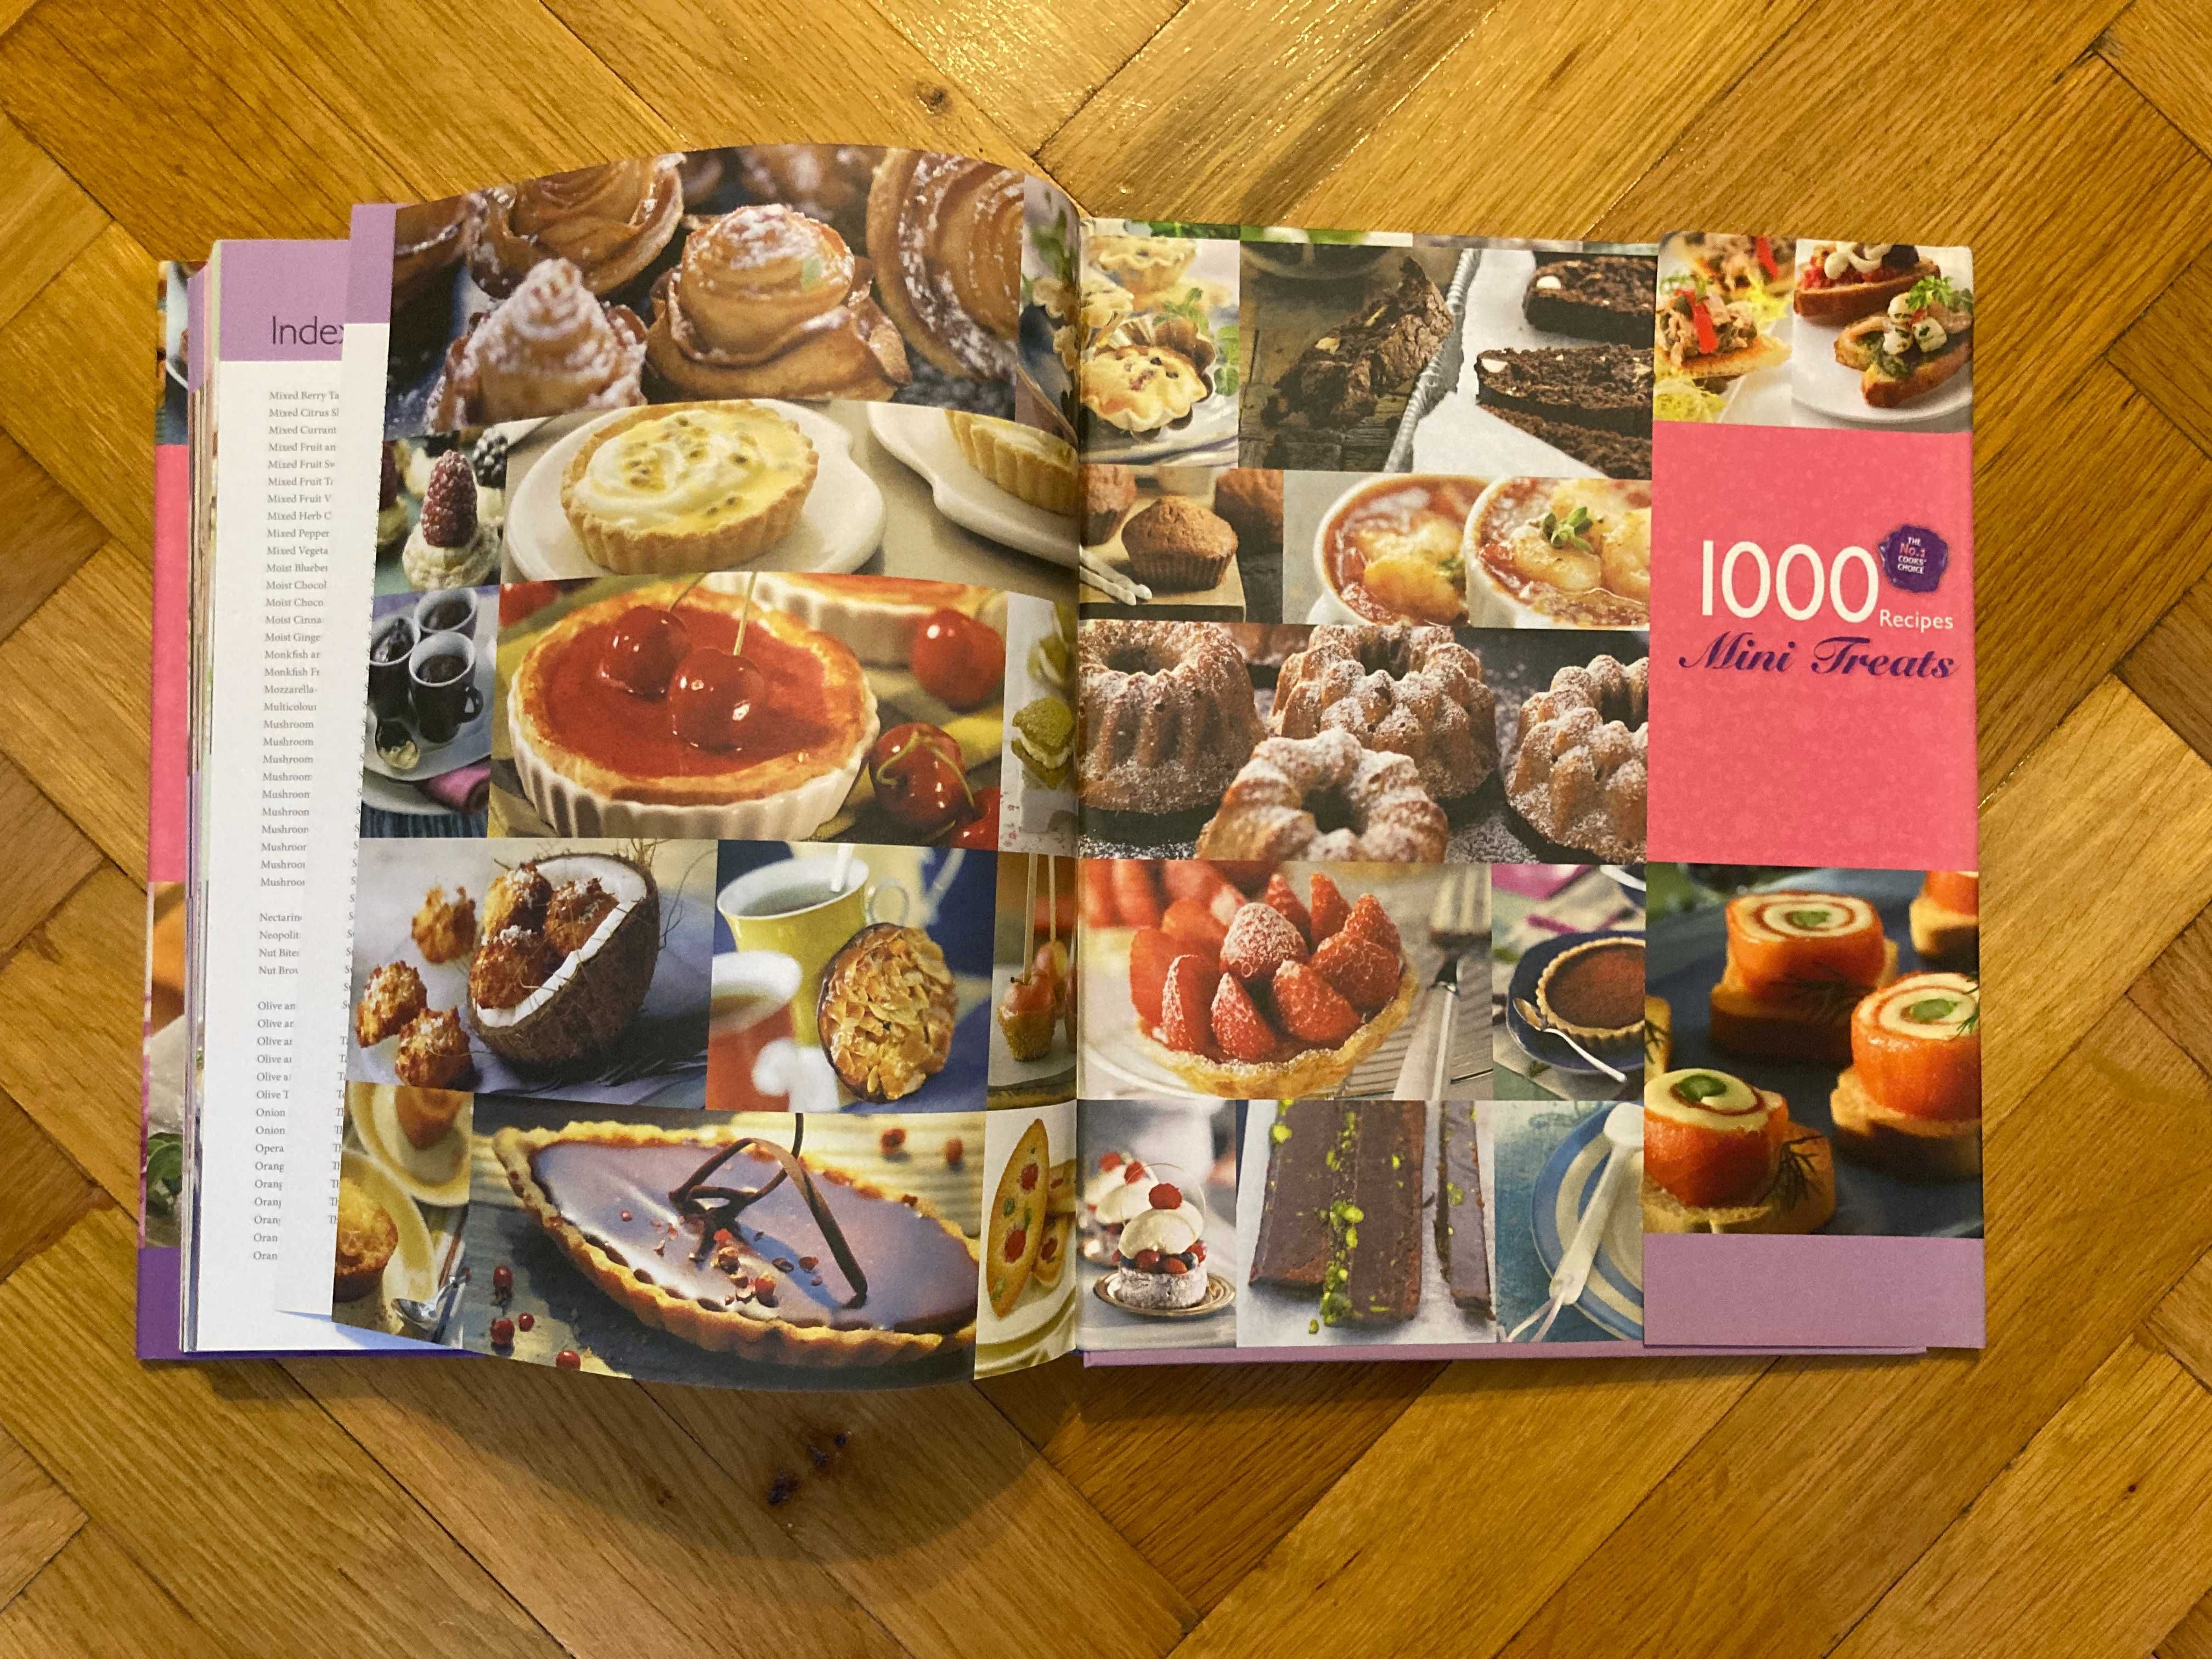 1000 Recipes - Mini Treats (hard cover)